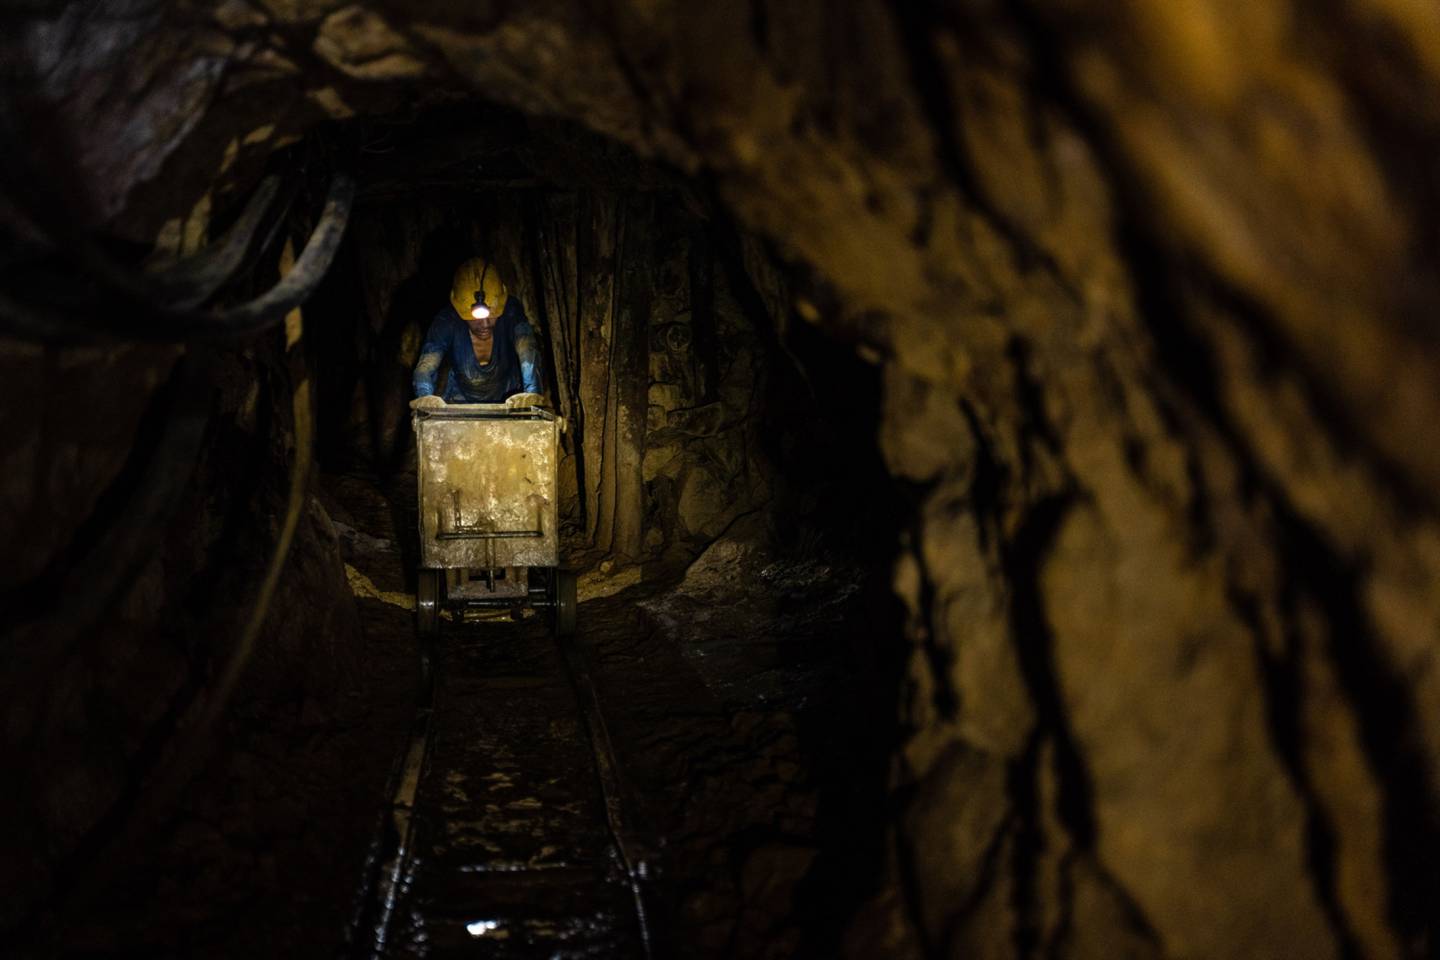 Un trabajador empuja un carrito de materias primas en una mina de oro en el departamento de Caldas, Colombia, el martes 29 de junio de 2021